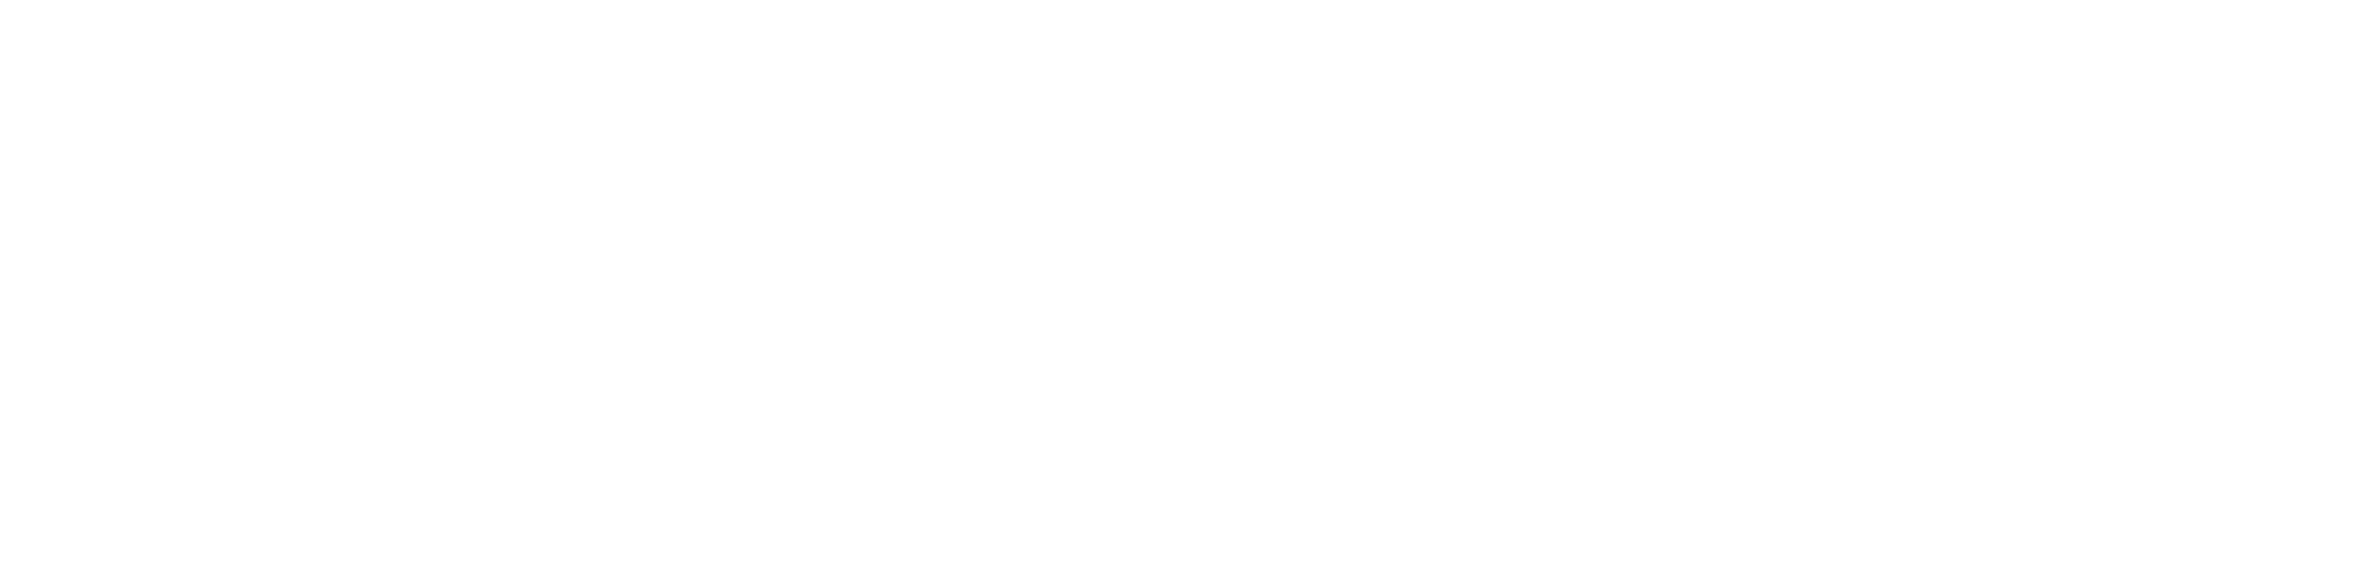 Dola Bamgboye foundation Logo